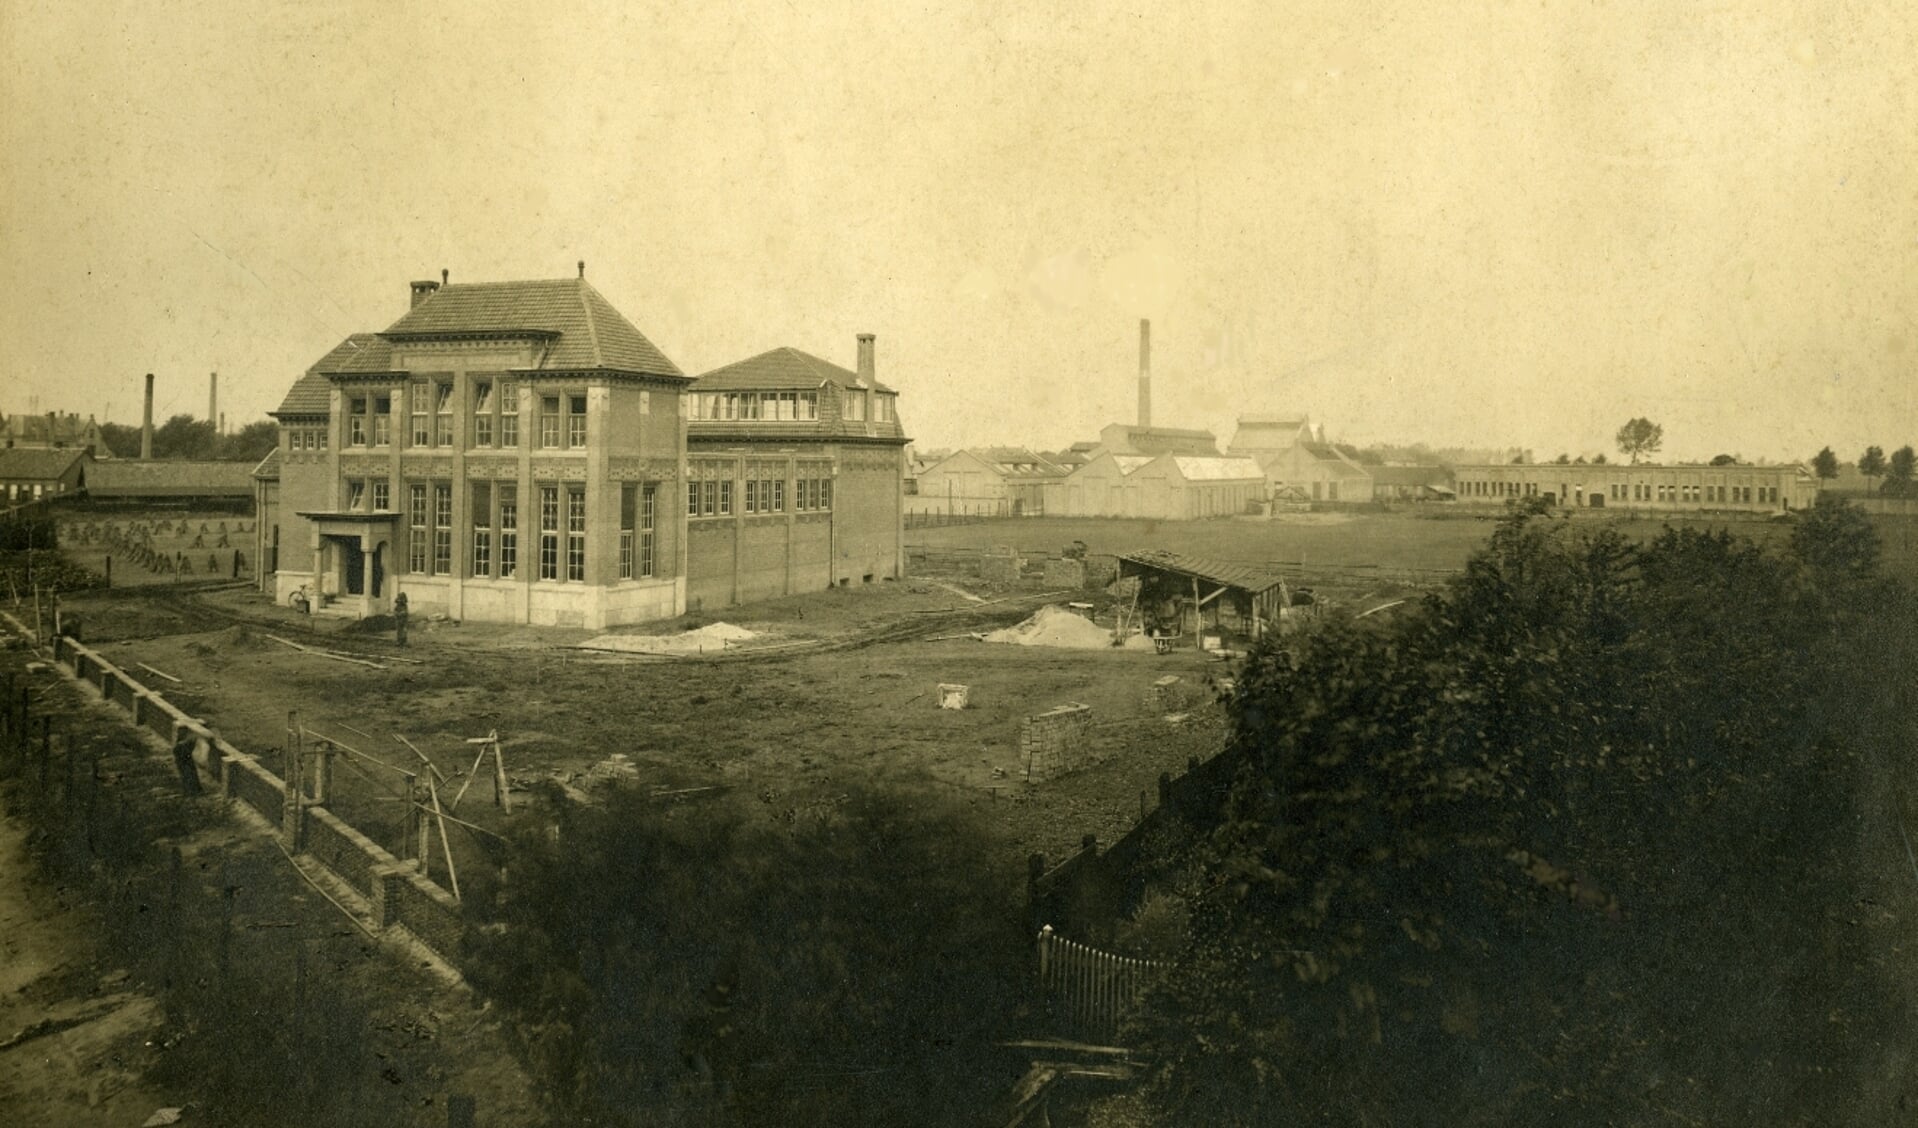 Het nieuwe kantoorgebouw, een ontwerp van Oscar Leeuw, kort voor de oplevering in 1919. Op de achtergrond is het fabrieksterrein te zien. Collectie Stadsarchief Oss.